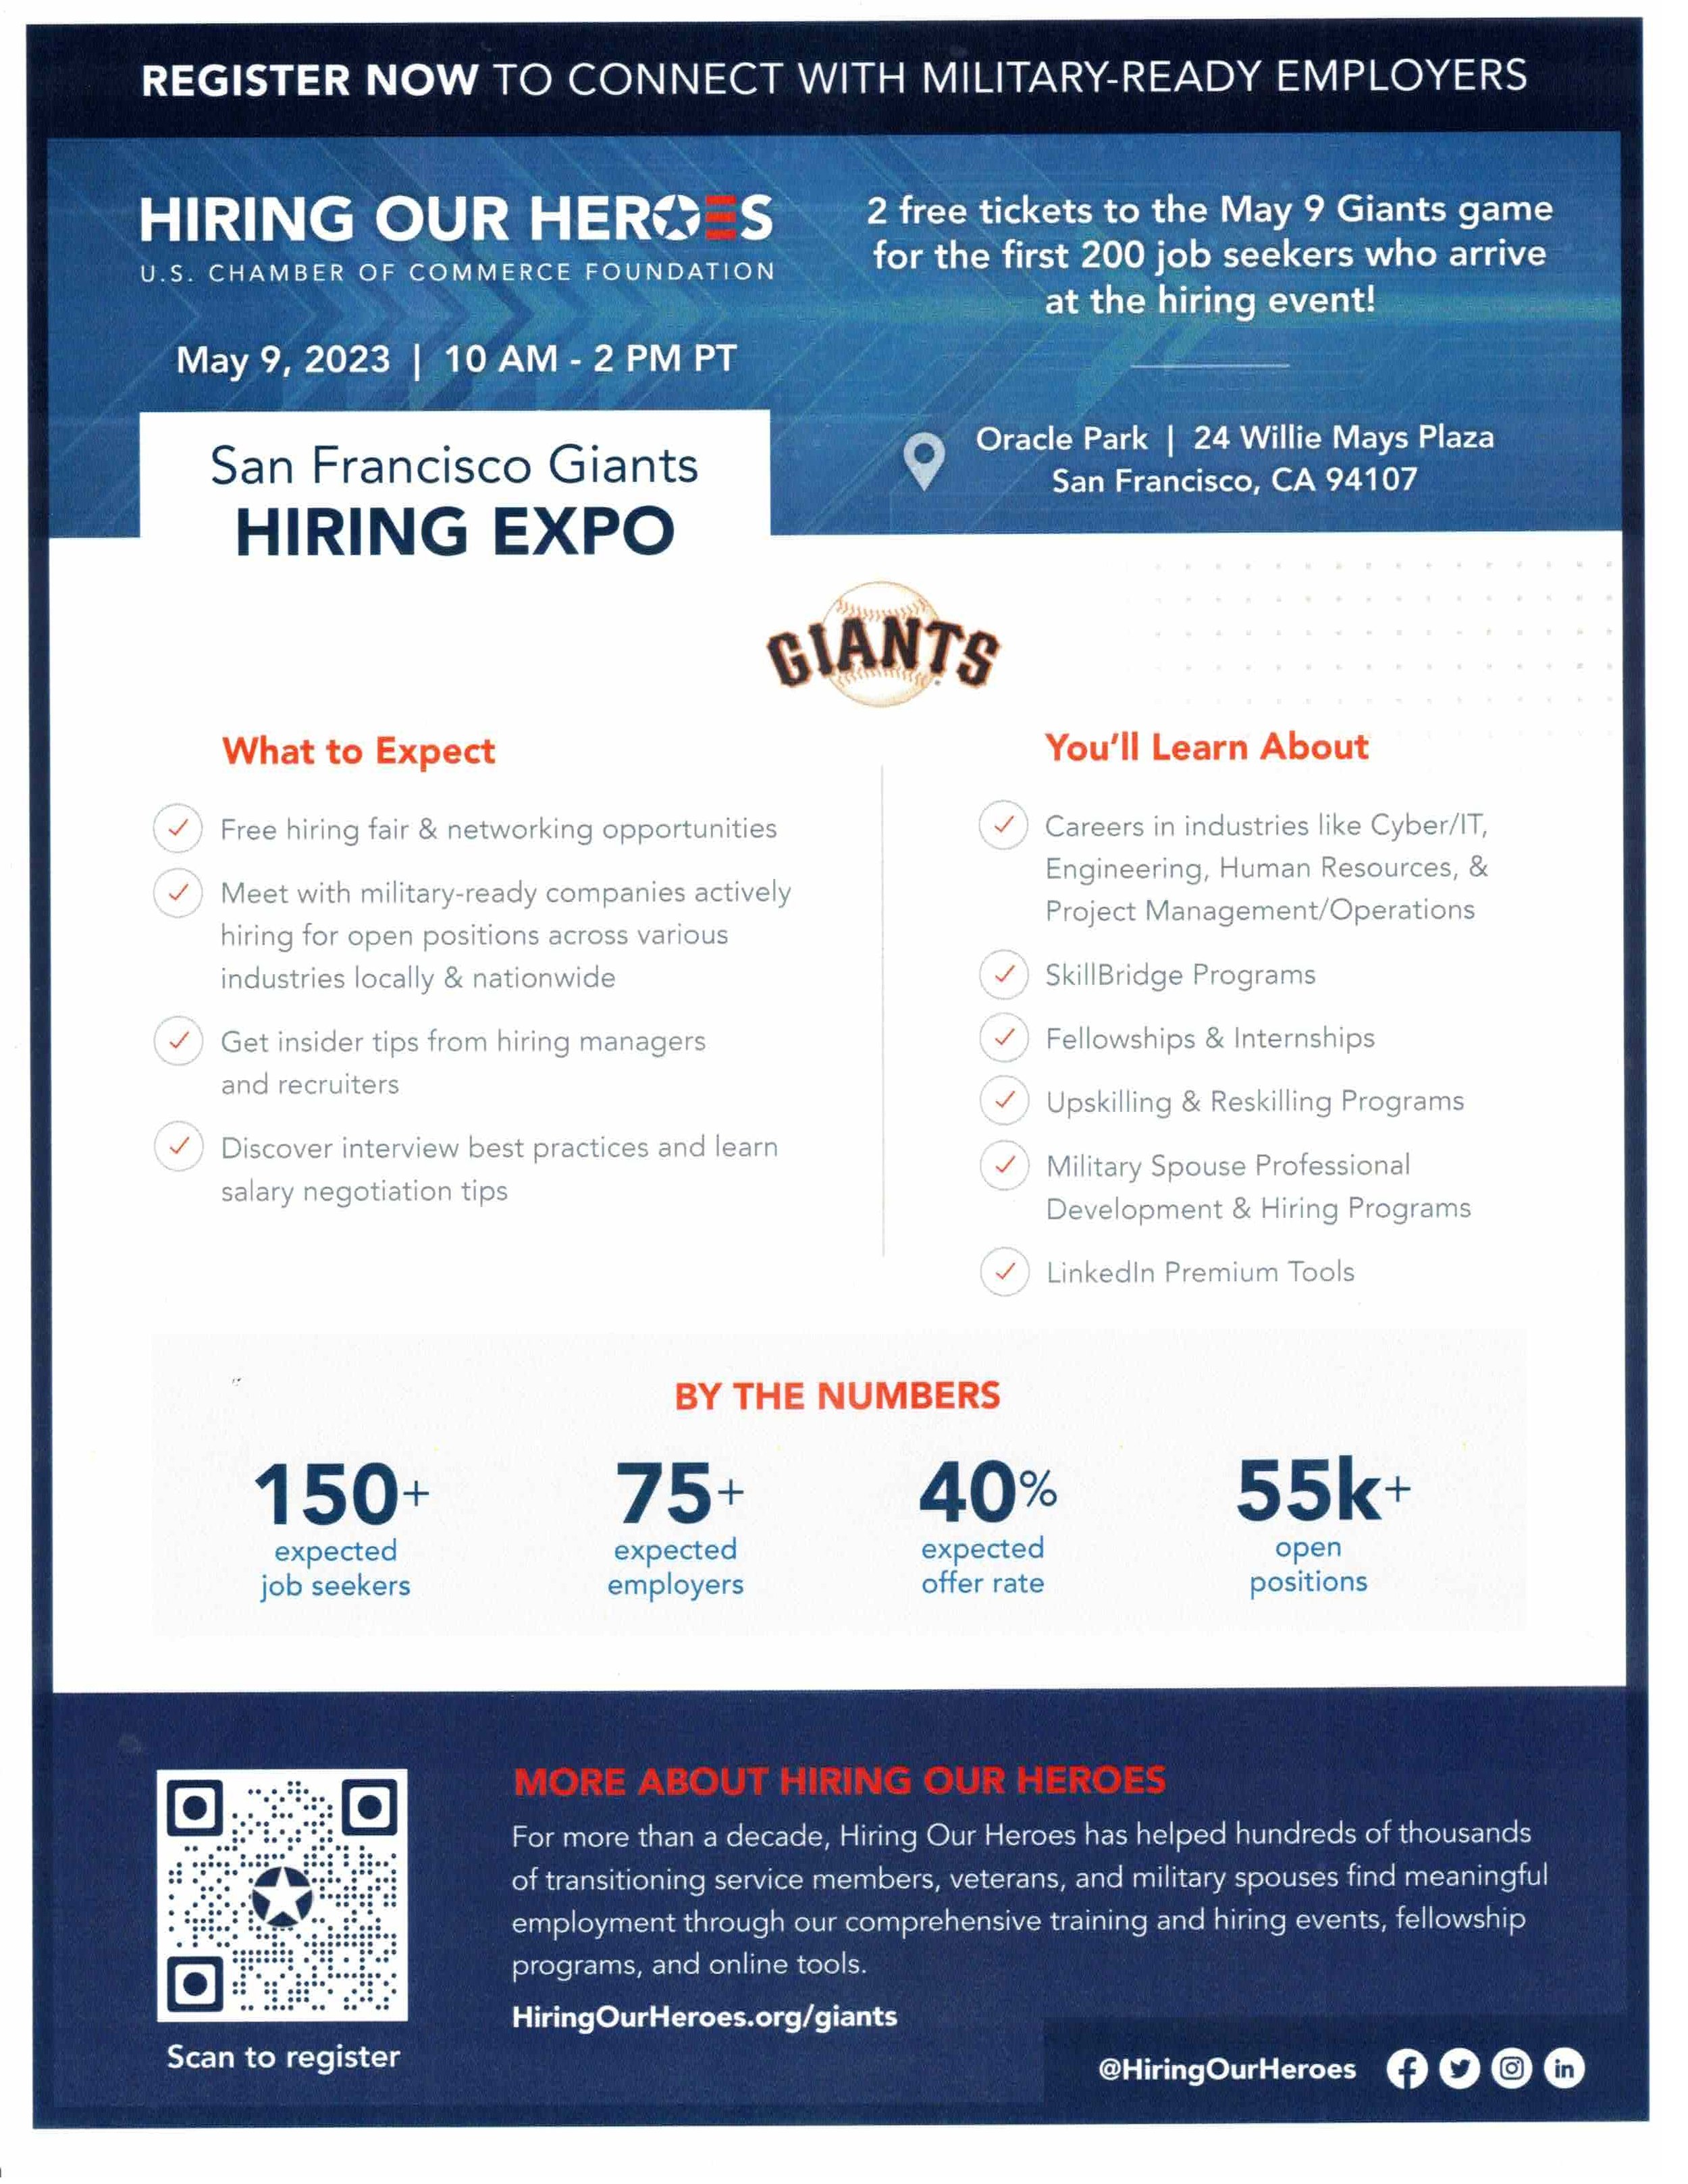 Giants Jobs fair.jpg